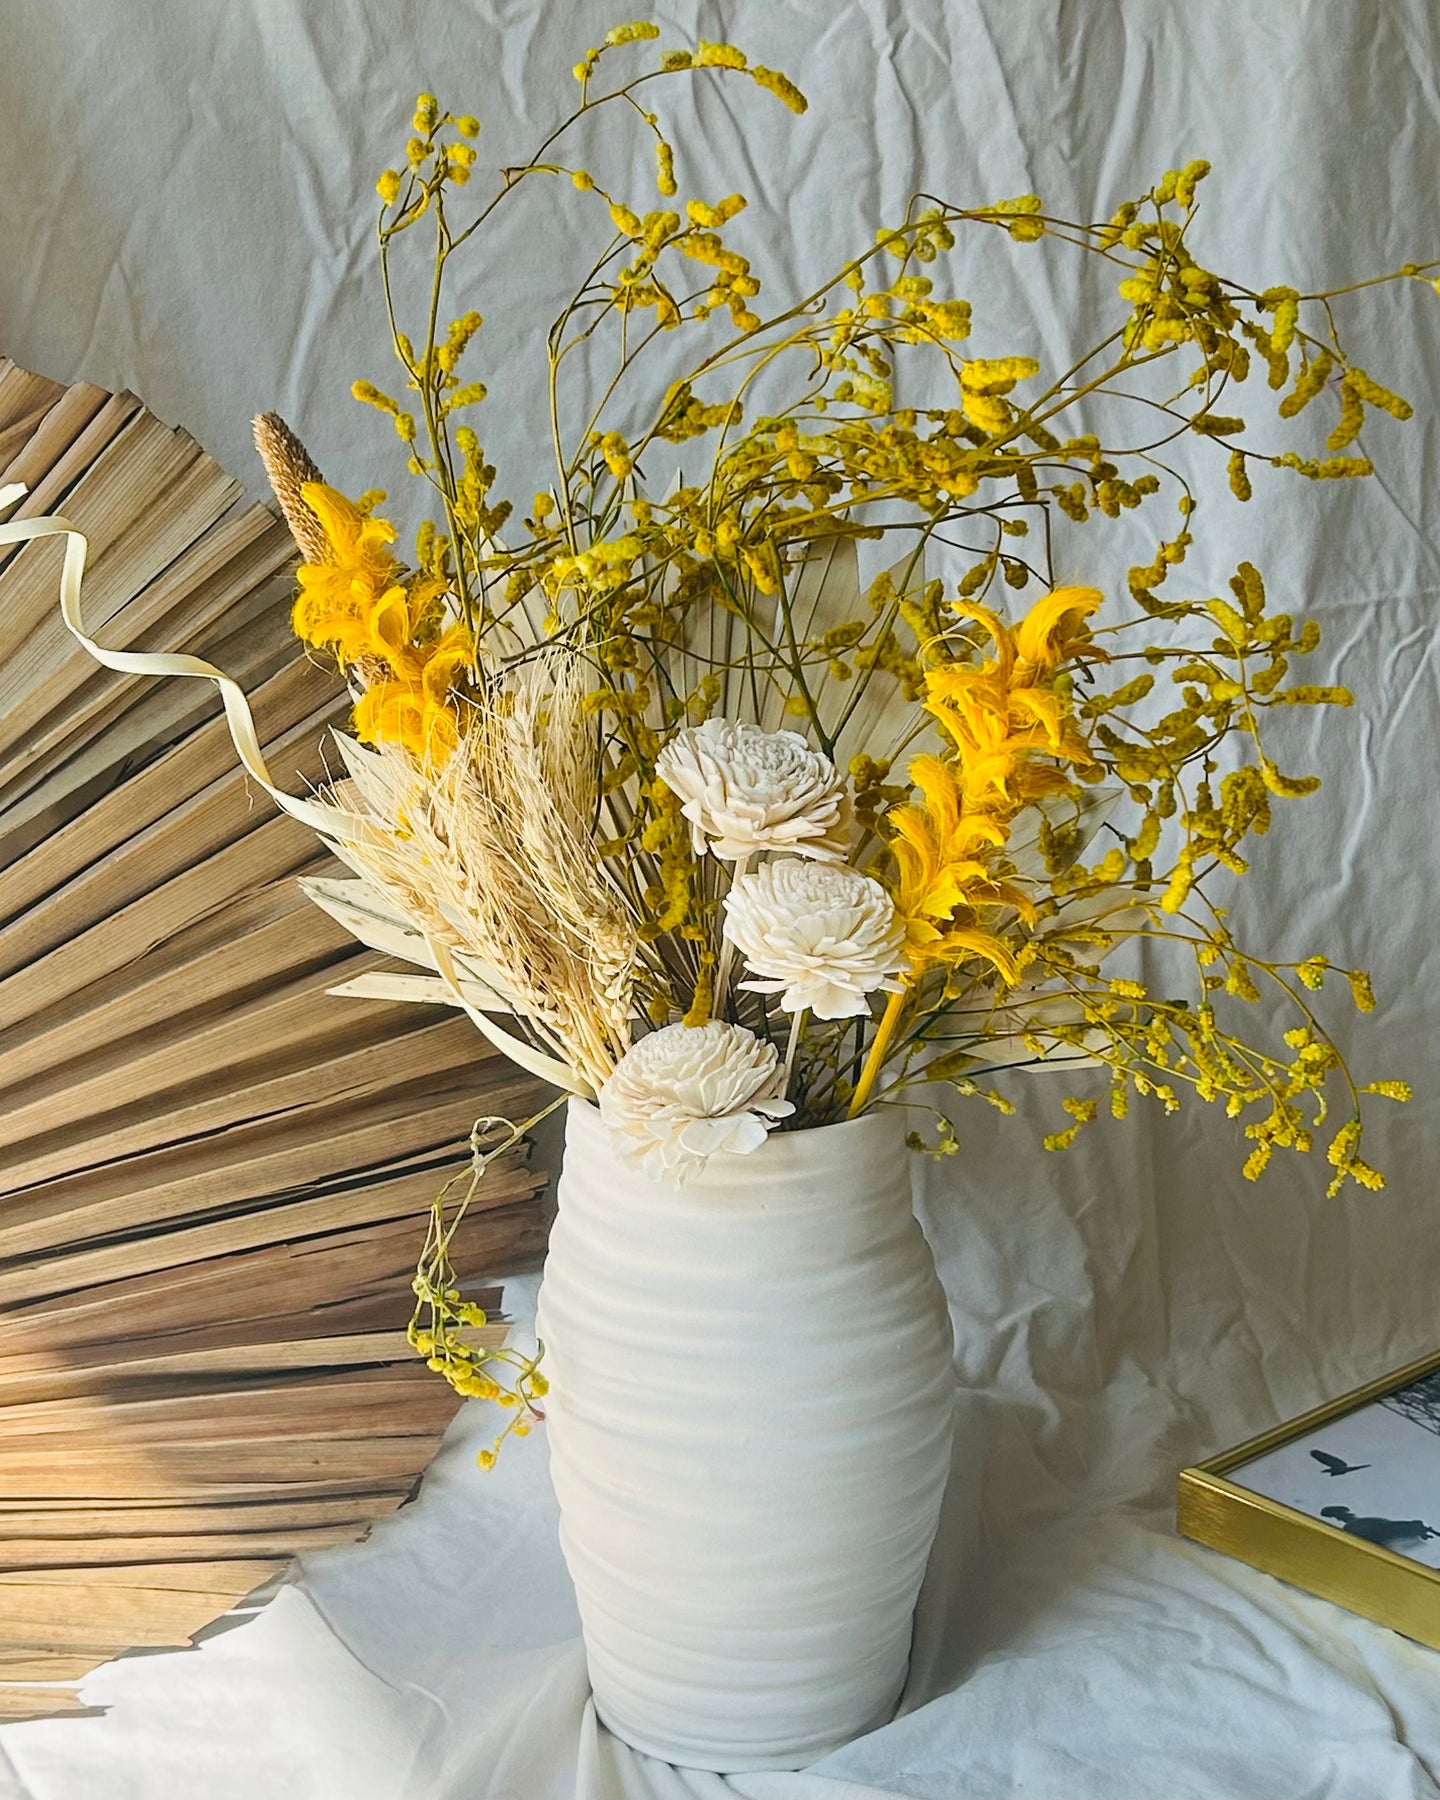 Siena dried flower vase set